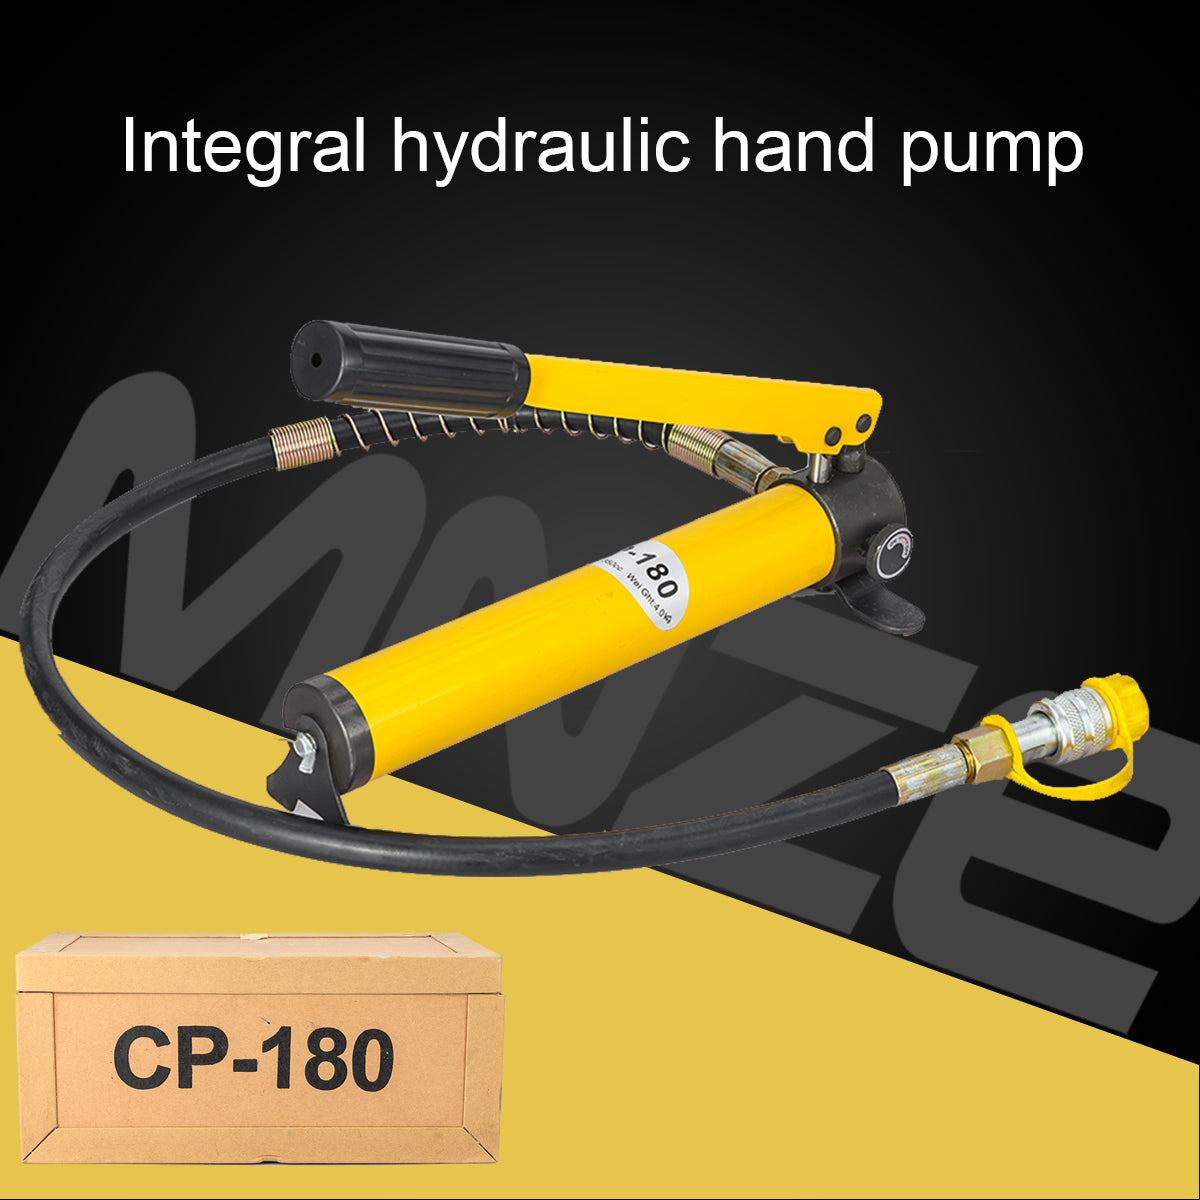 CP-180 Hydraulic Hand Pump Manual Hydraulic Pump with Hose New